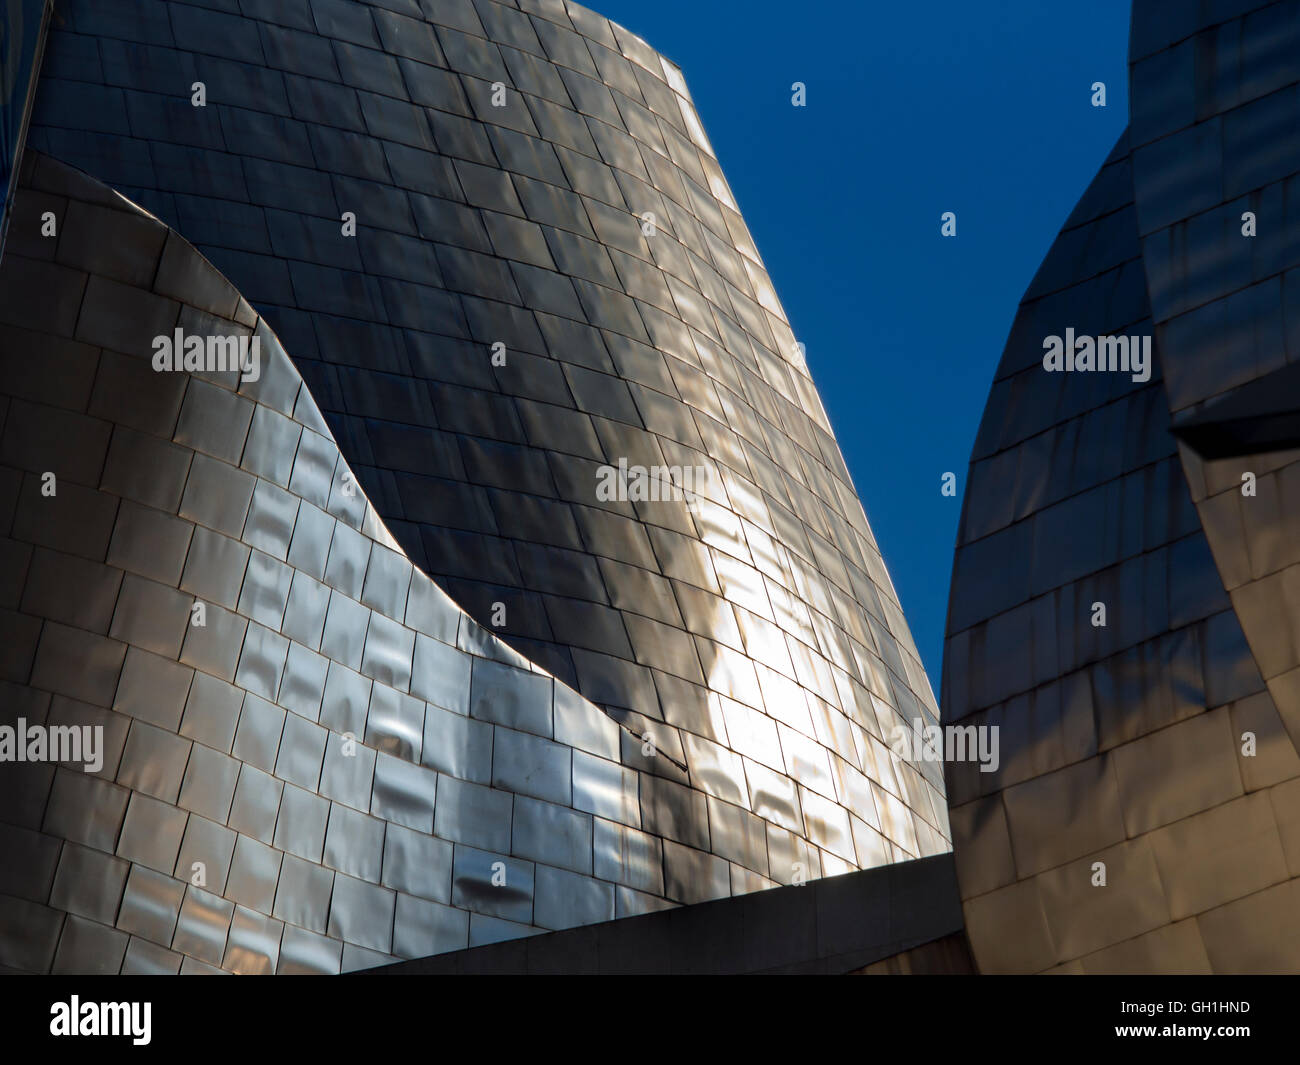 The iconic Guggenheim Museum in Bilbao, Spain 15 Stock Photo